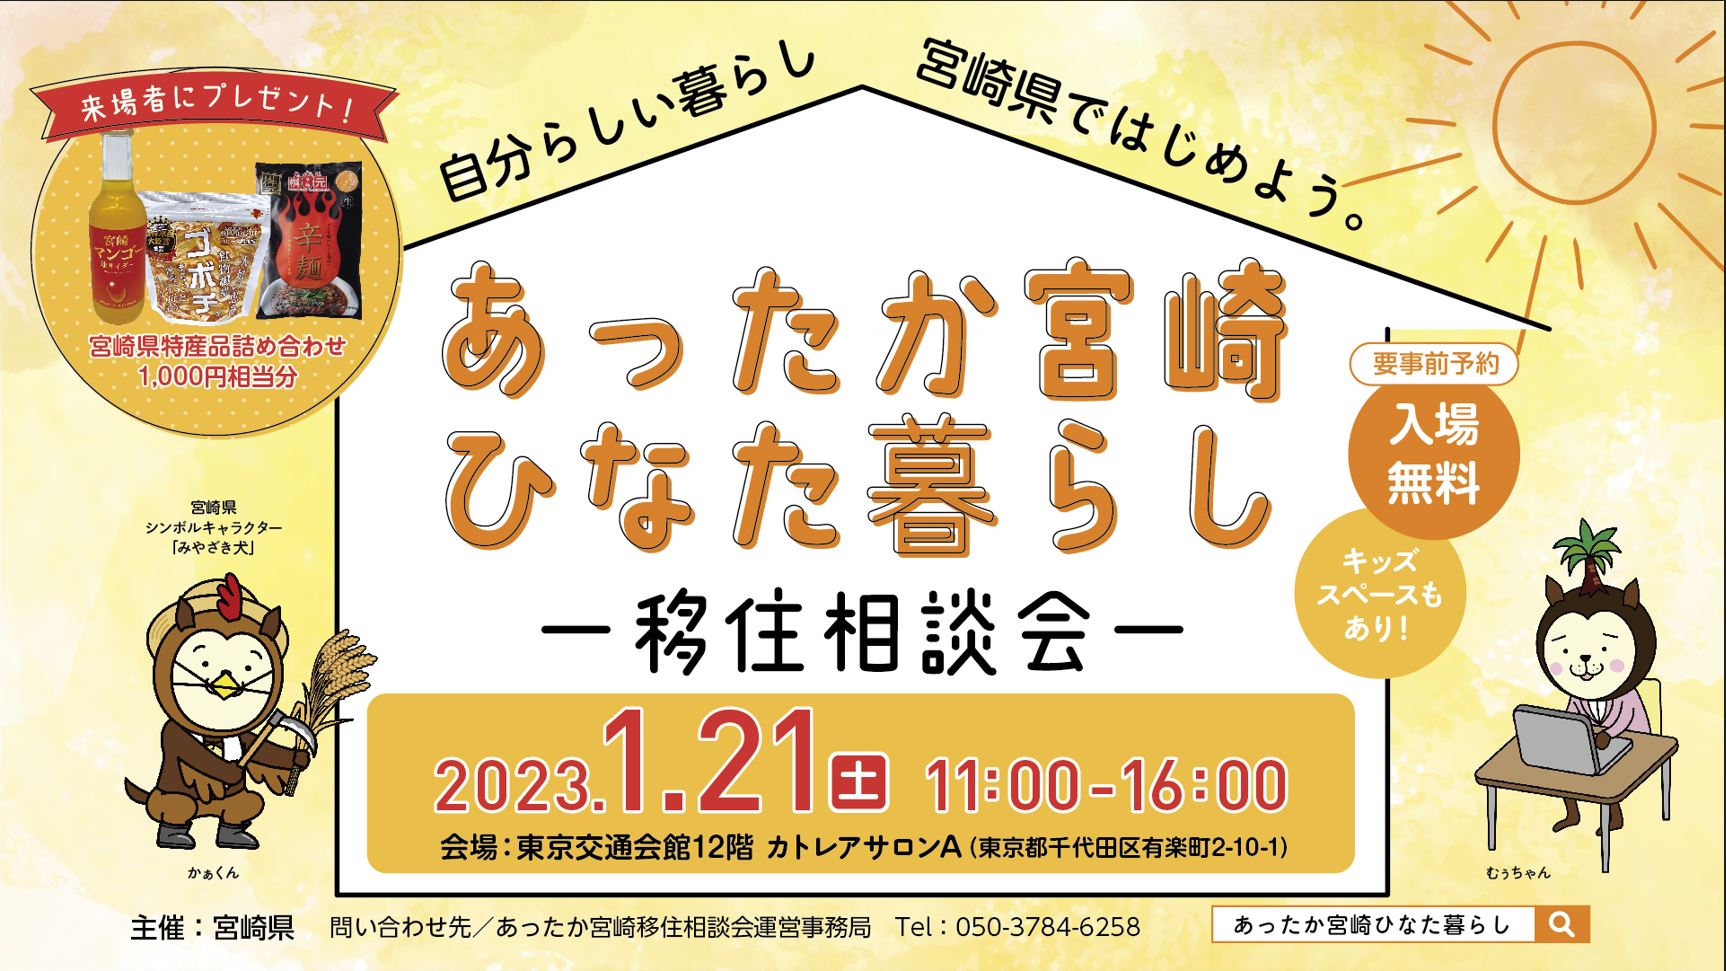 移住相談会「あったか宮崎ひなた暮らし」を東京交通会館で開催
